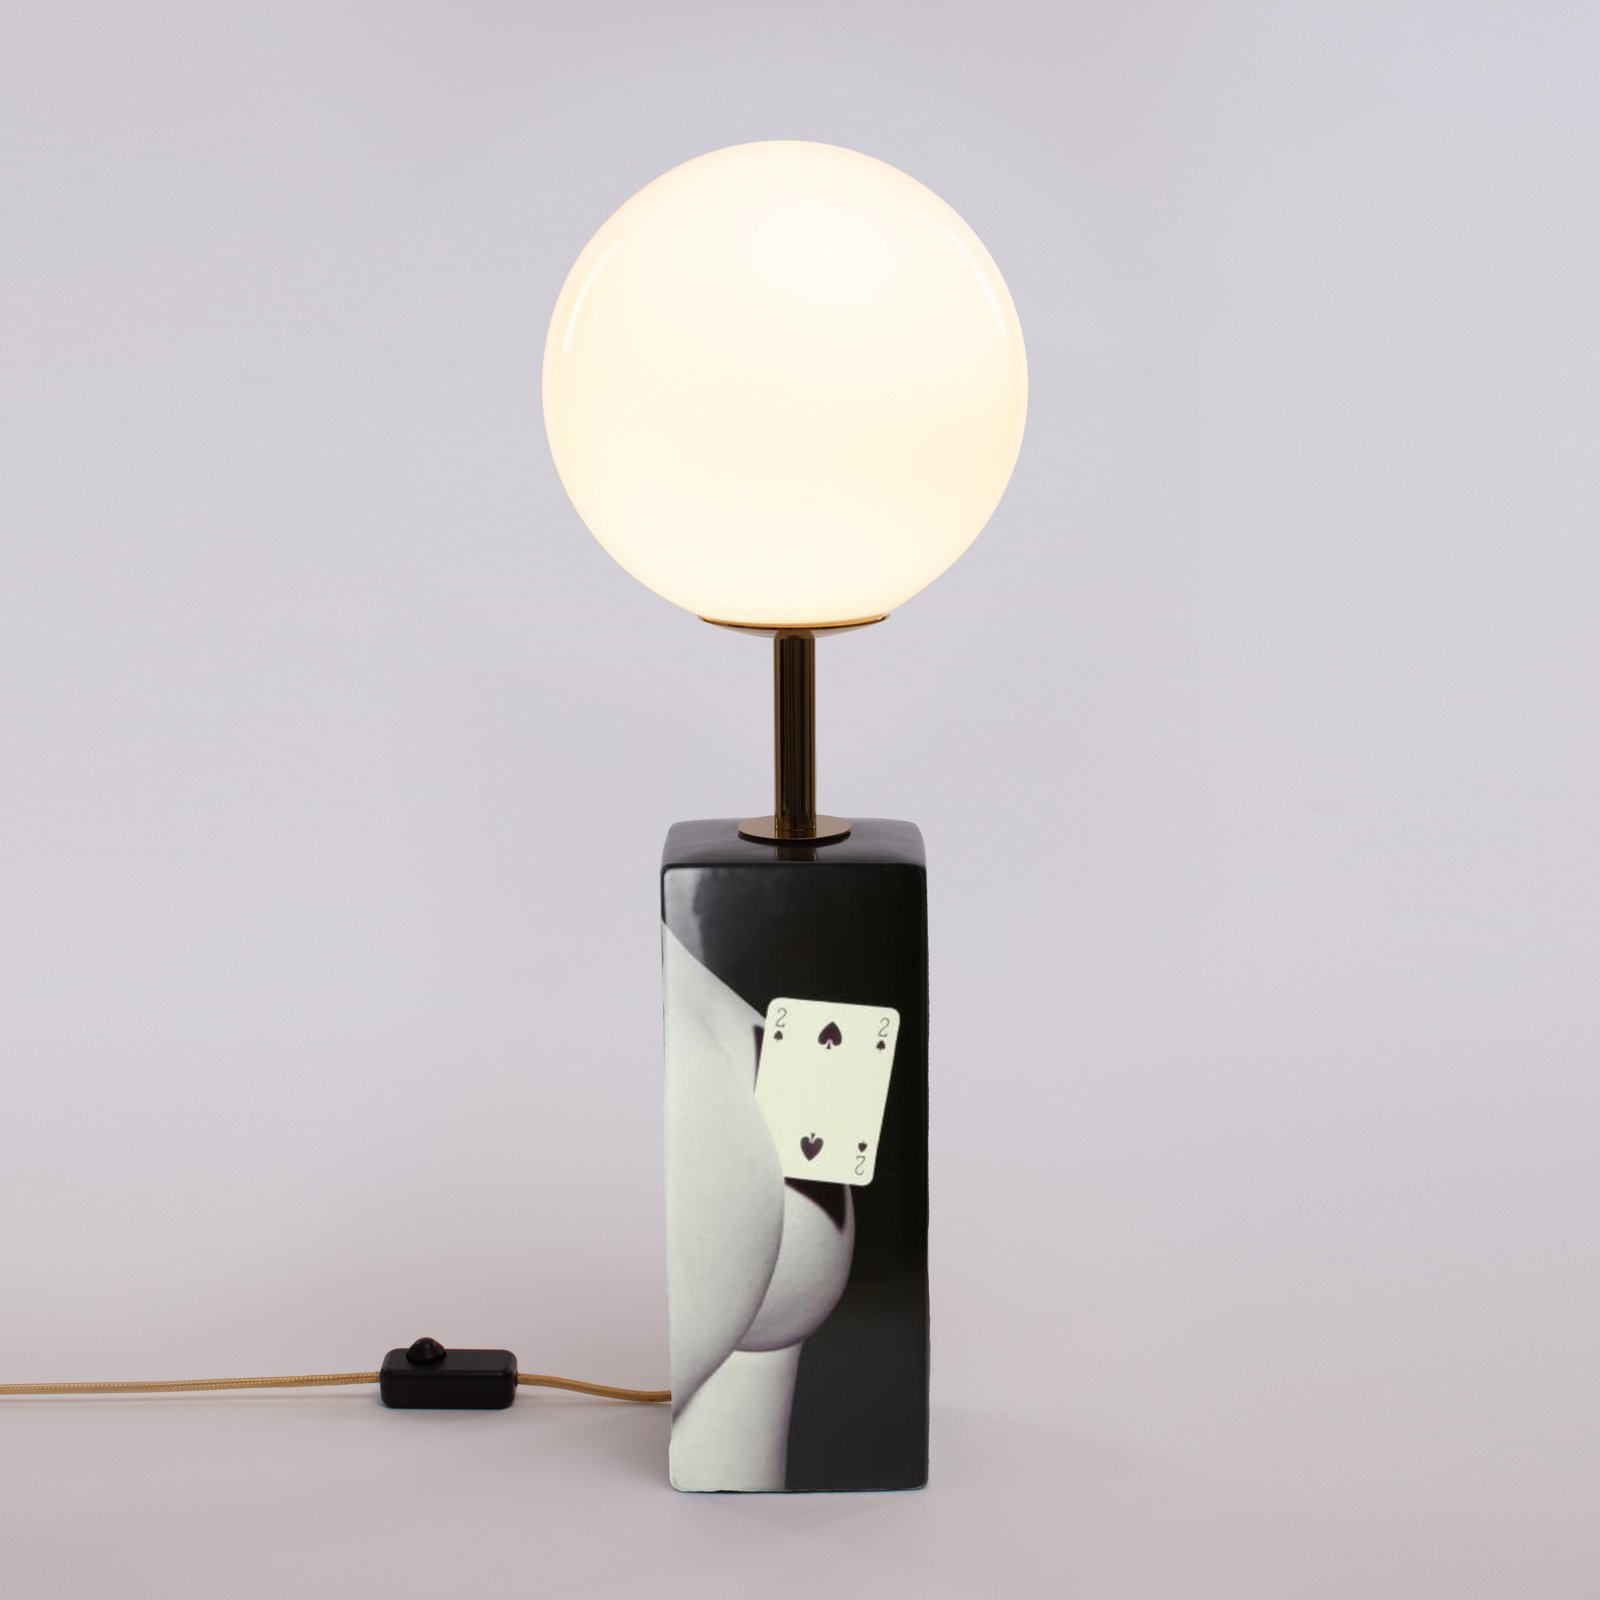 LED tafellamp Toiletpaper met kaartenmotief